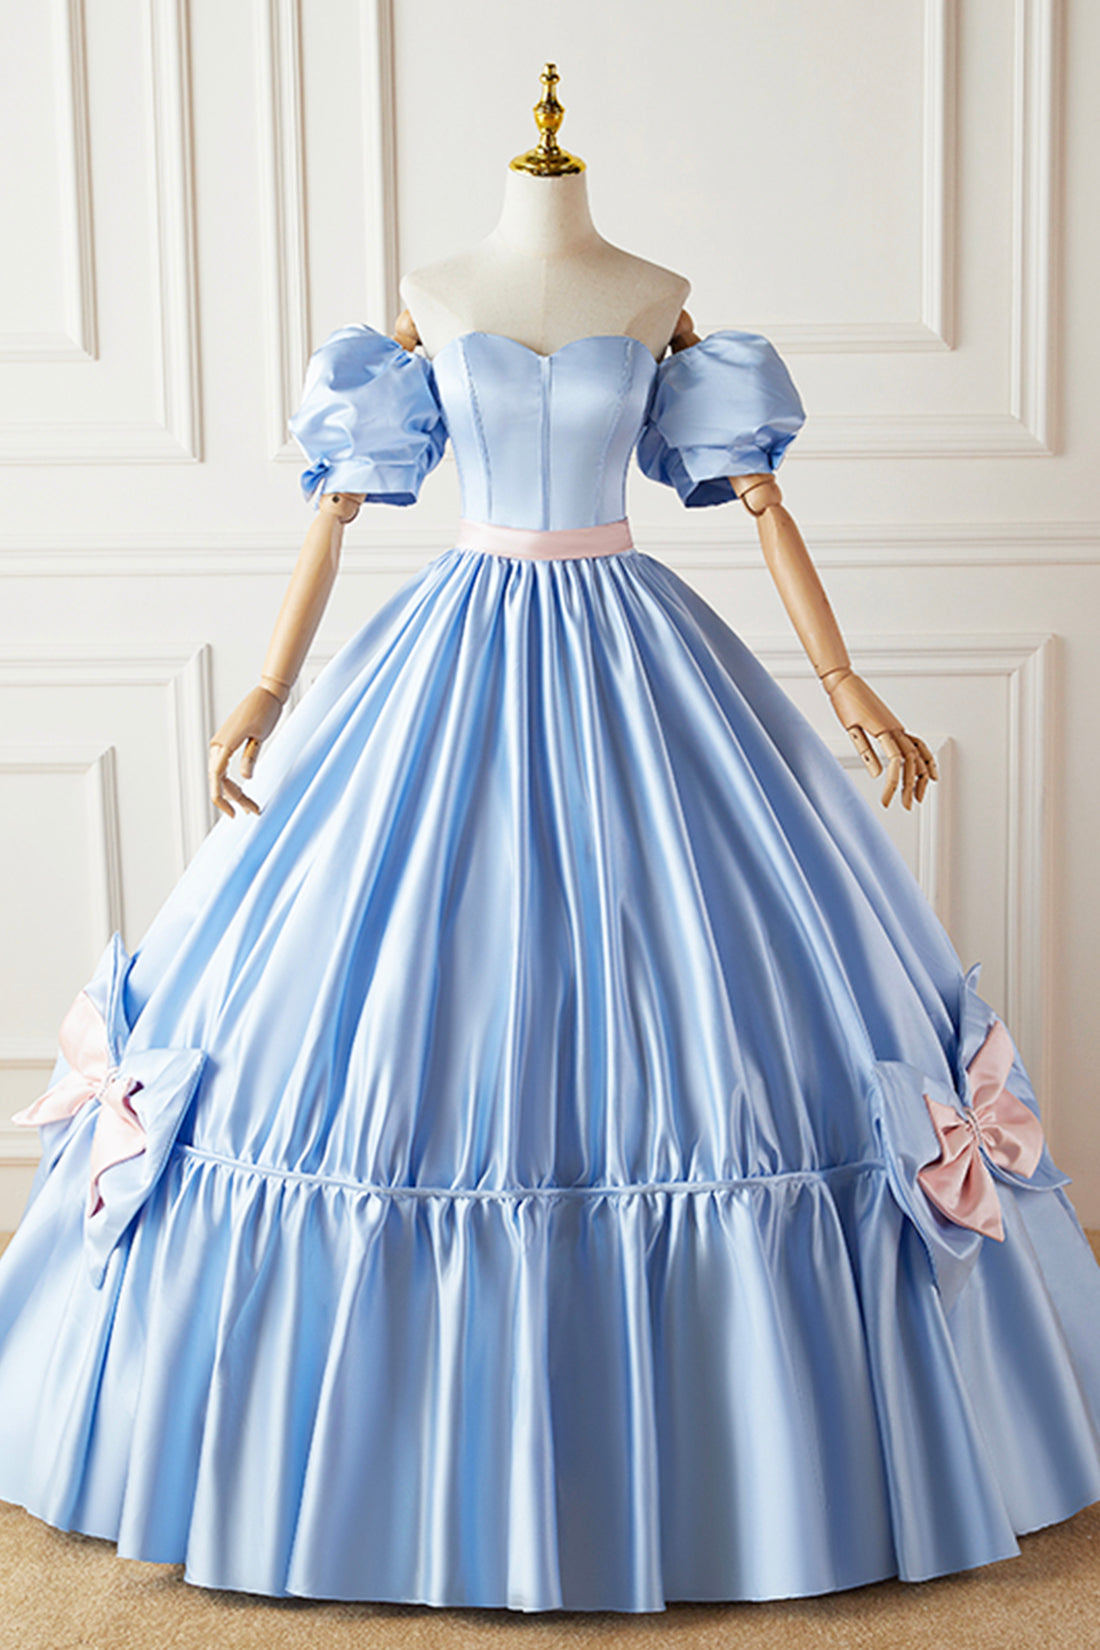 Bridesmaid Dress Floral, Blue Satin Long Princess Dress, Lovely Short Sleeve Ball Gown Sweet 16 Dress